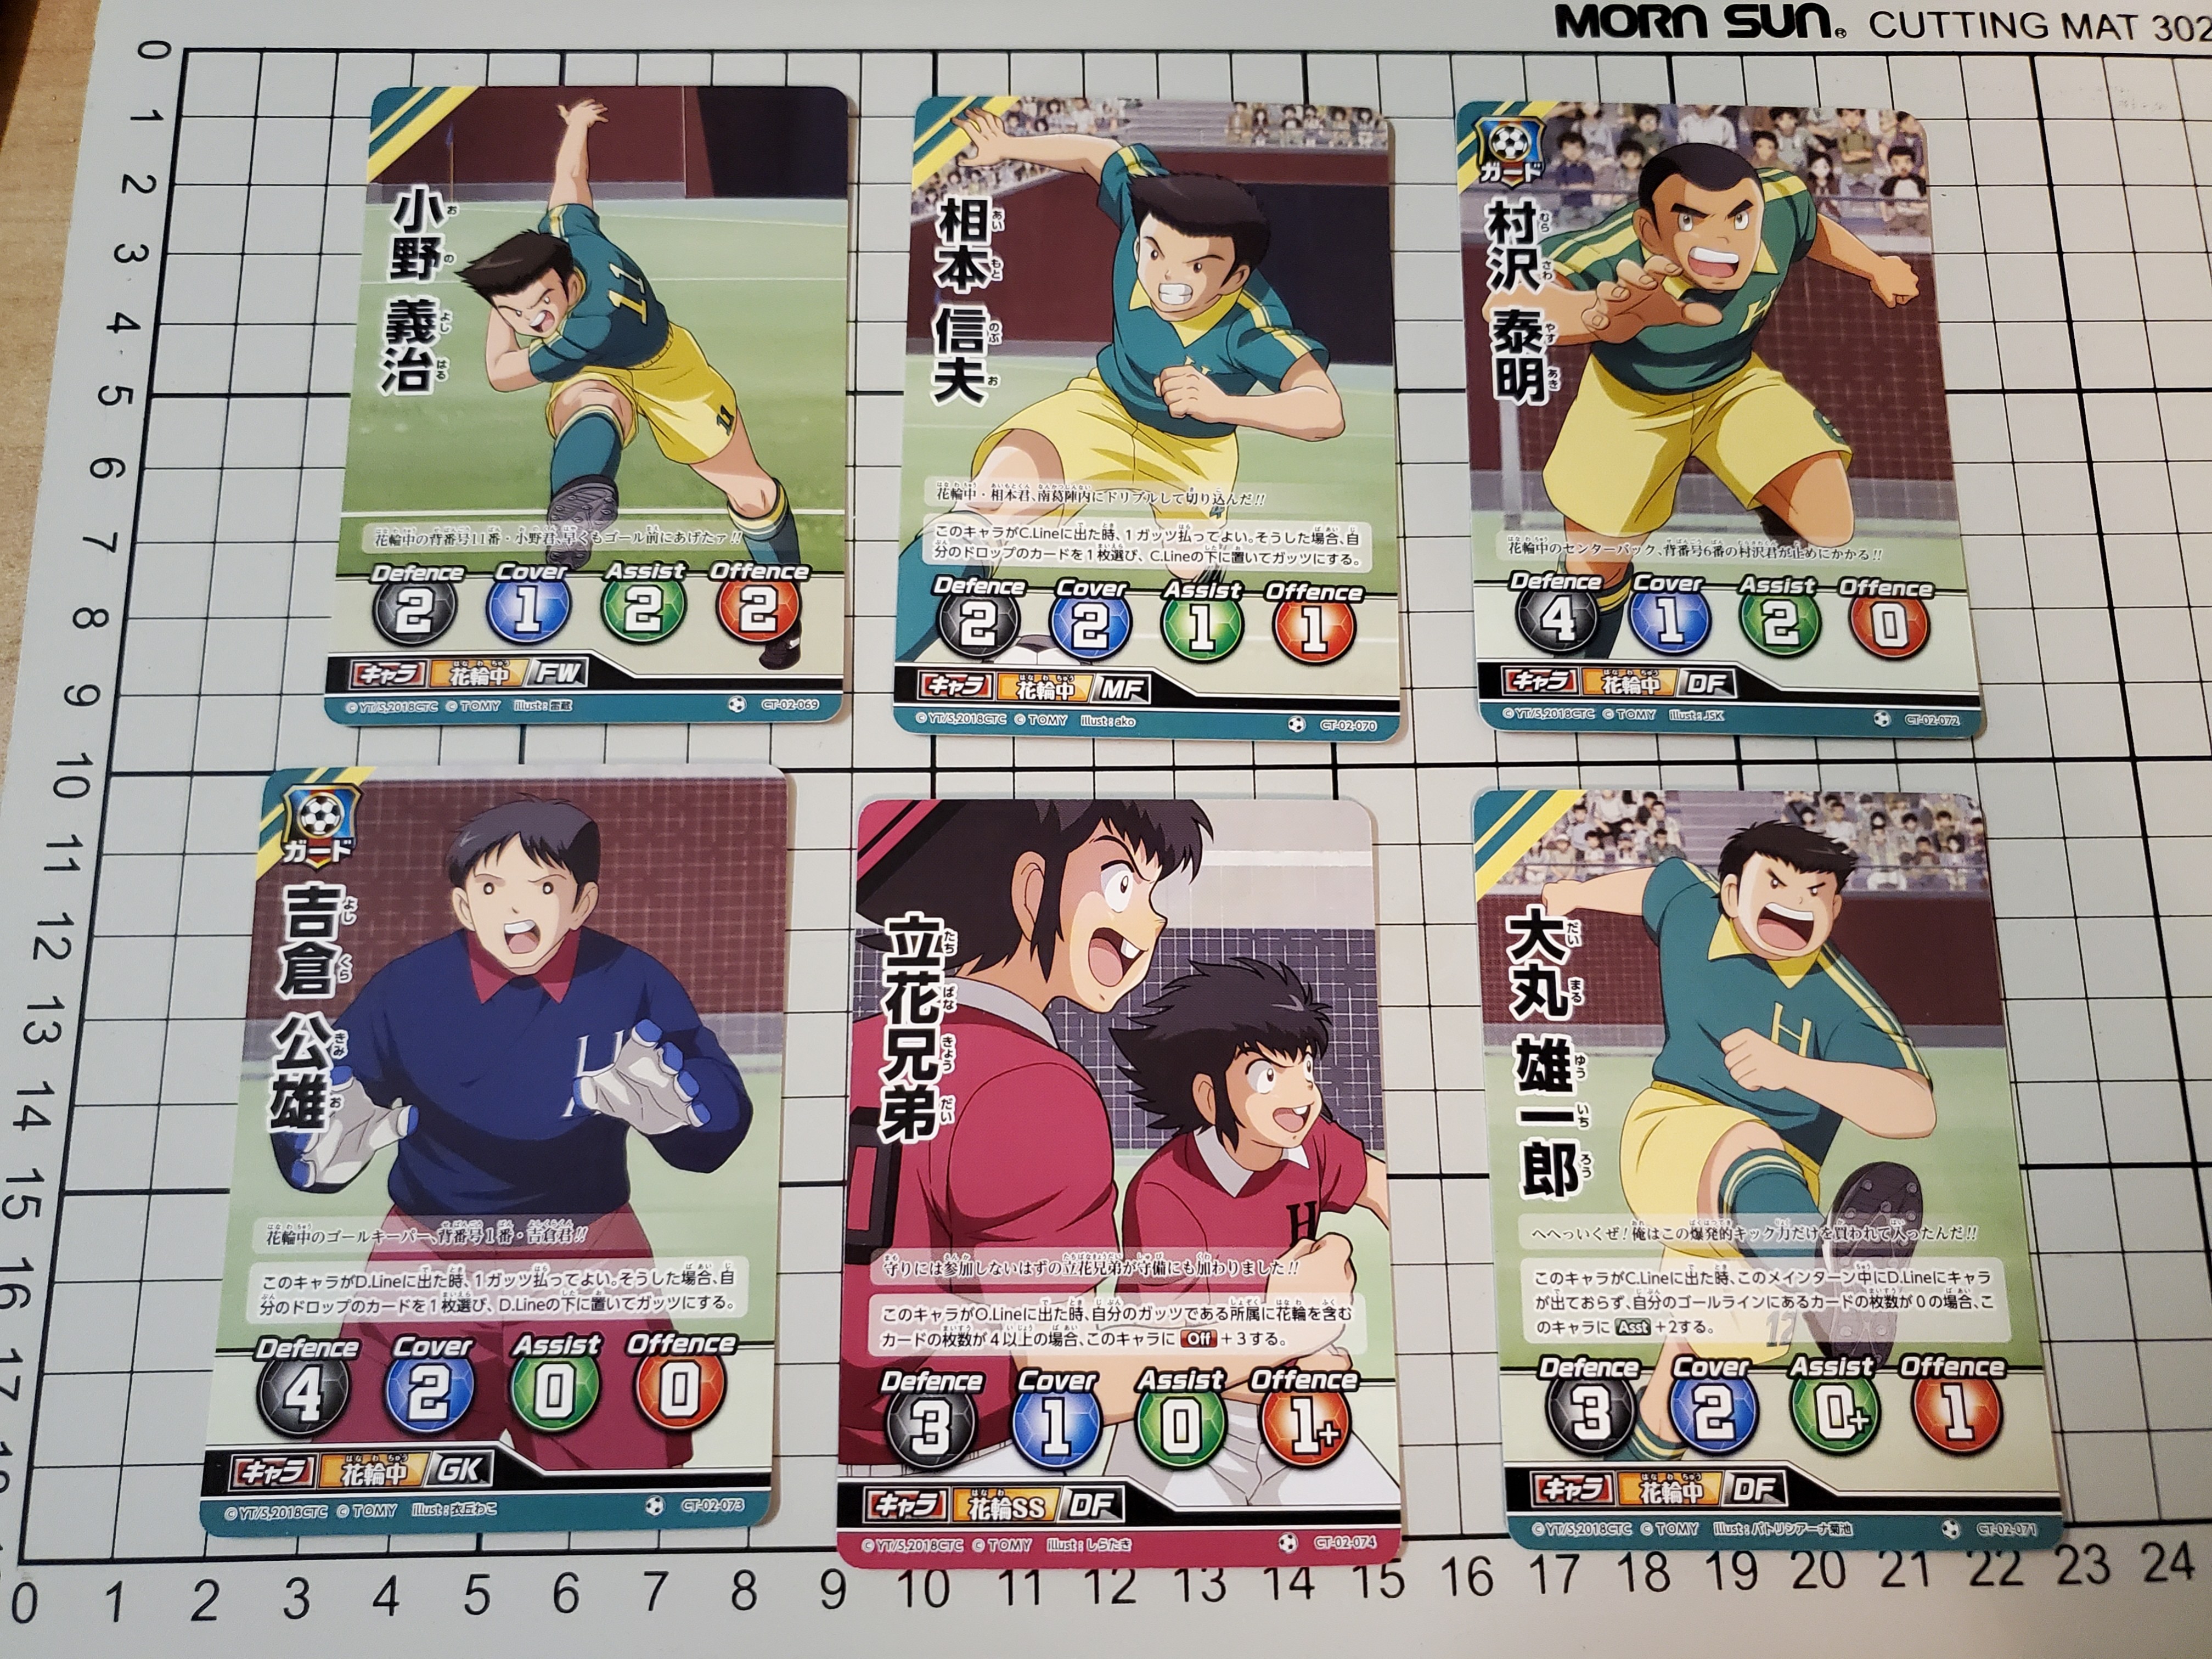 足球小將遊戲卡6張花輪中立花兄弟 玩具 遊戲類 Board Games Cards On Carousell